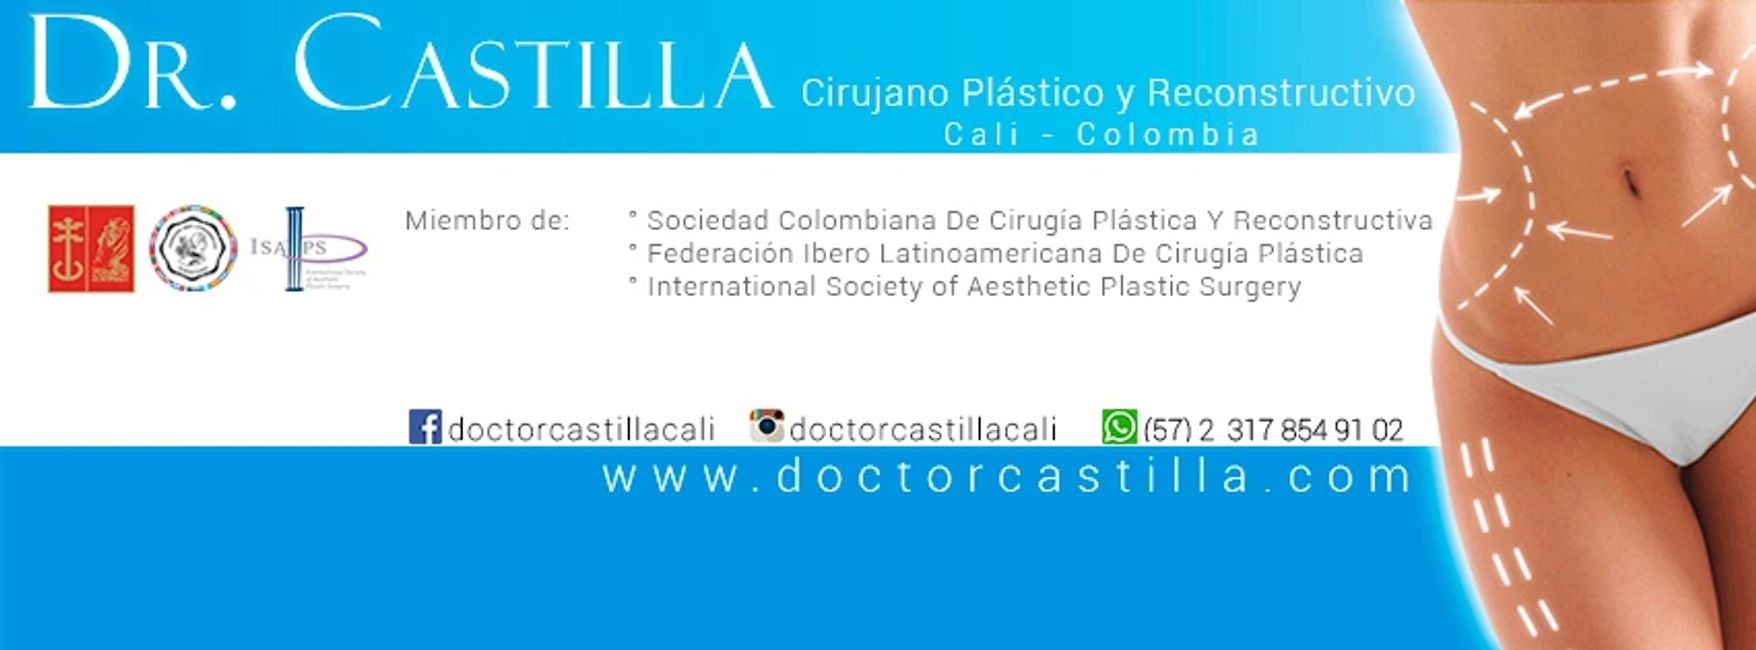 dr.castilla cirujano plástico cali colombia
retiro de biopolimeros
biopolimeros, reconstrucción de los glúteos.
